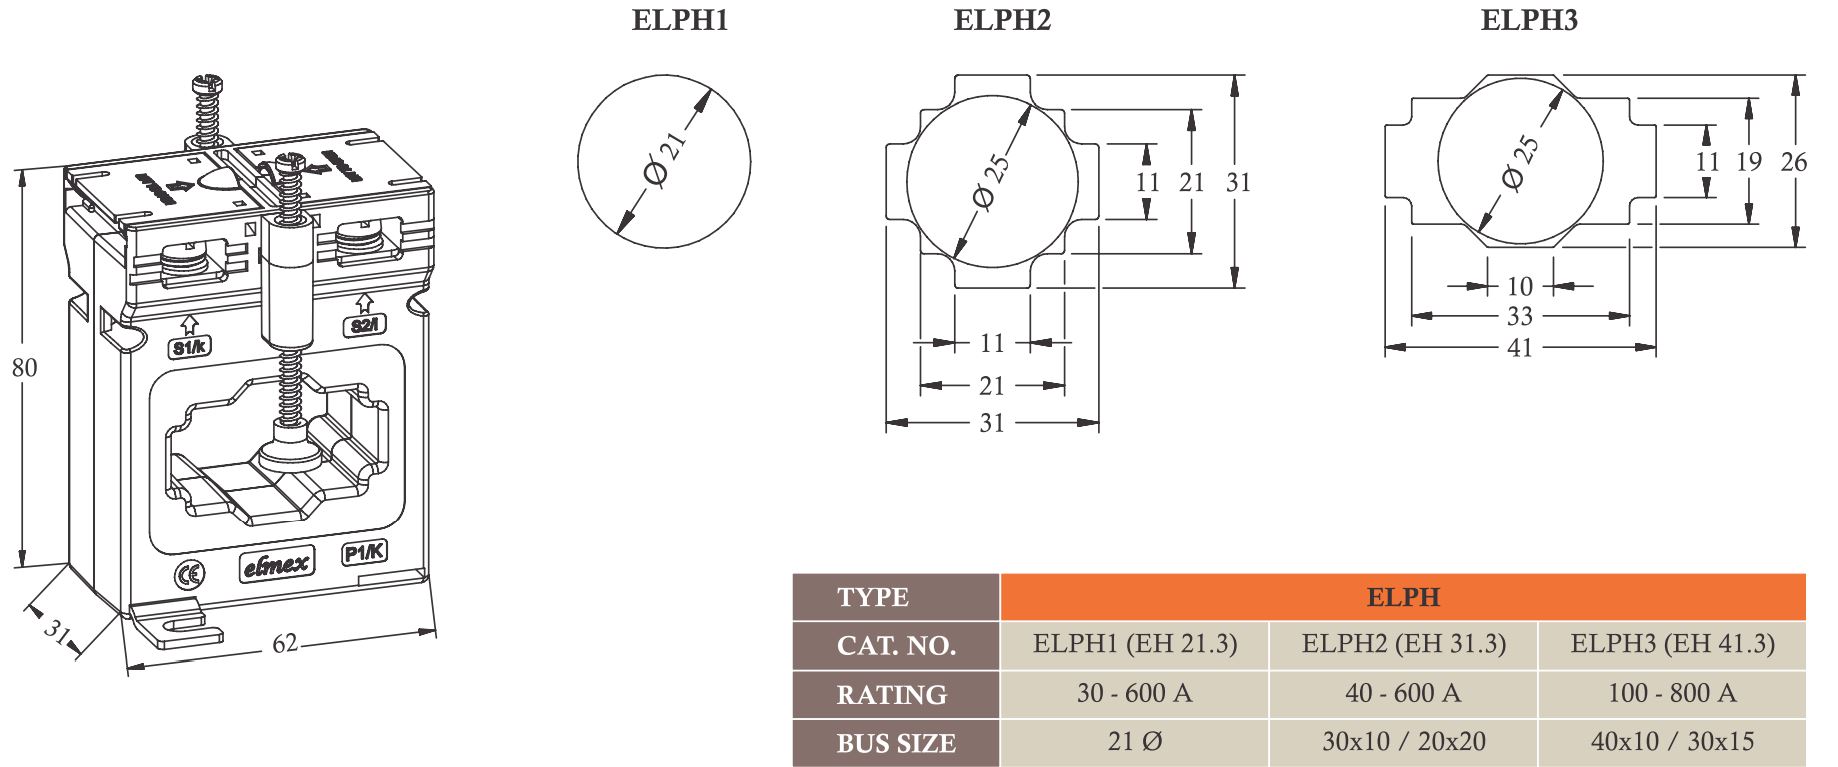 Kích thước biến dòng Elmex ELPH1 - ELPH2 - ELPH3